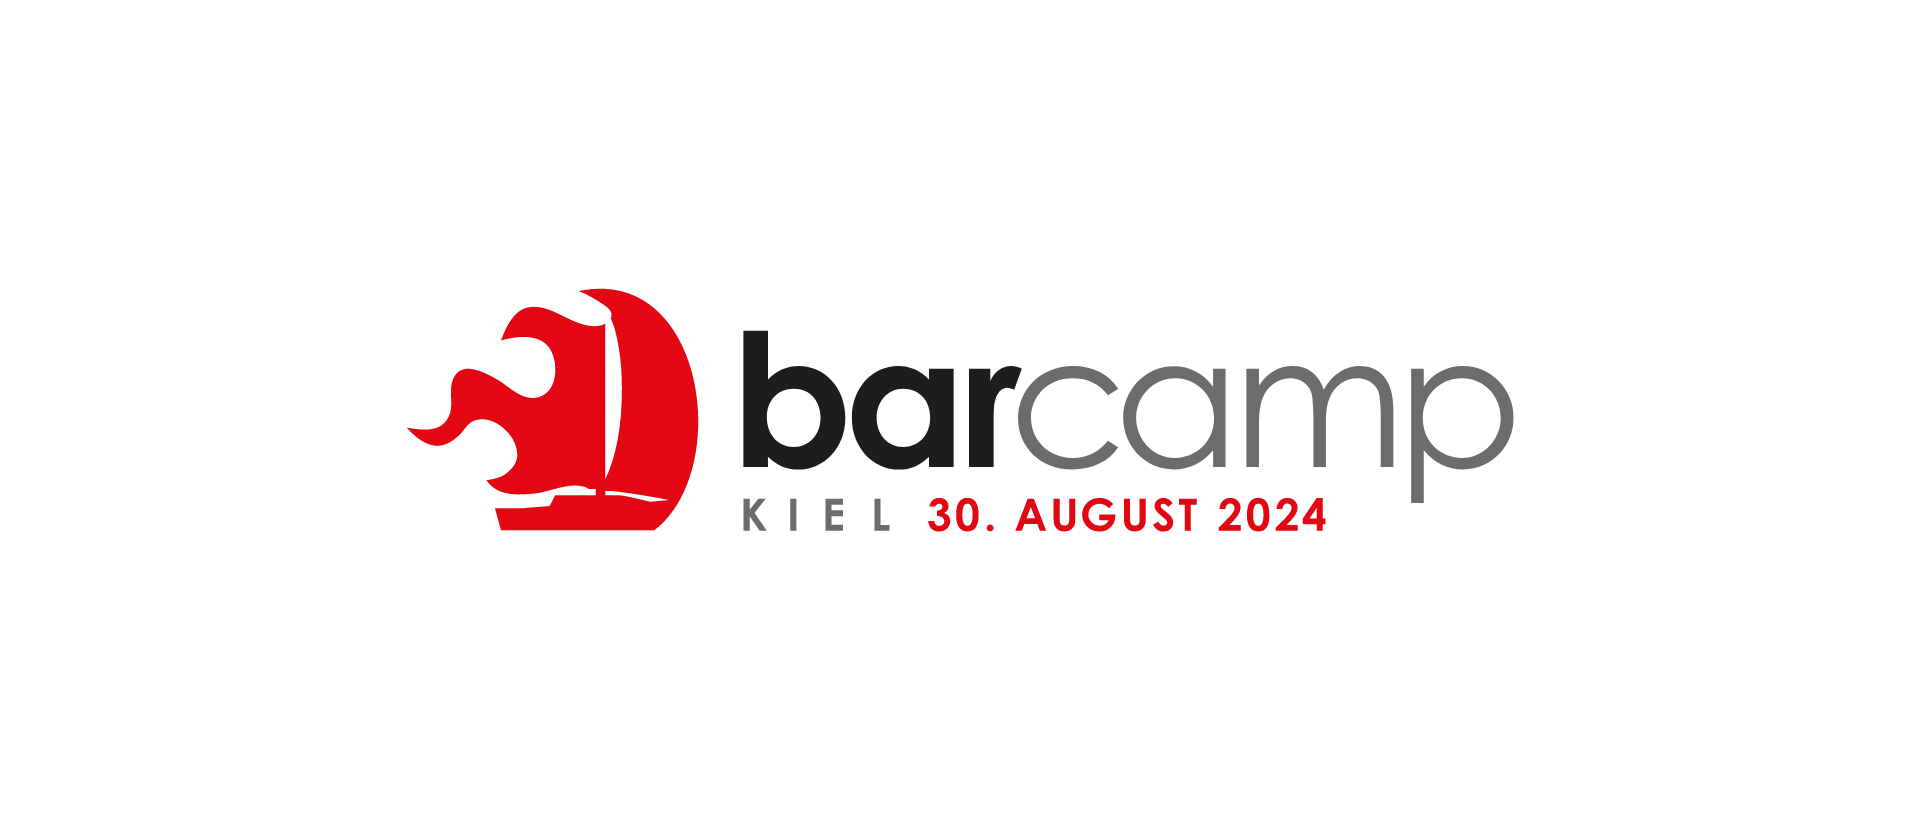 Barcamp Kiel 2024 - die wilde 13 🚂